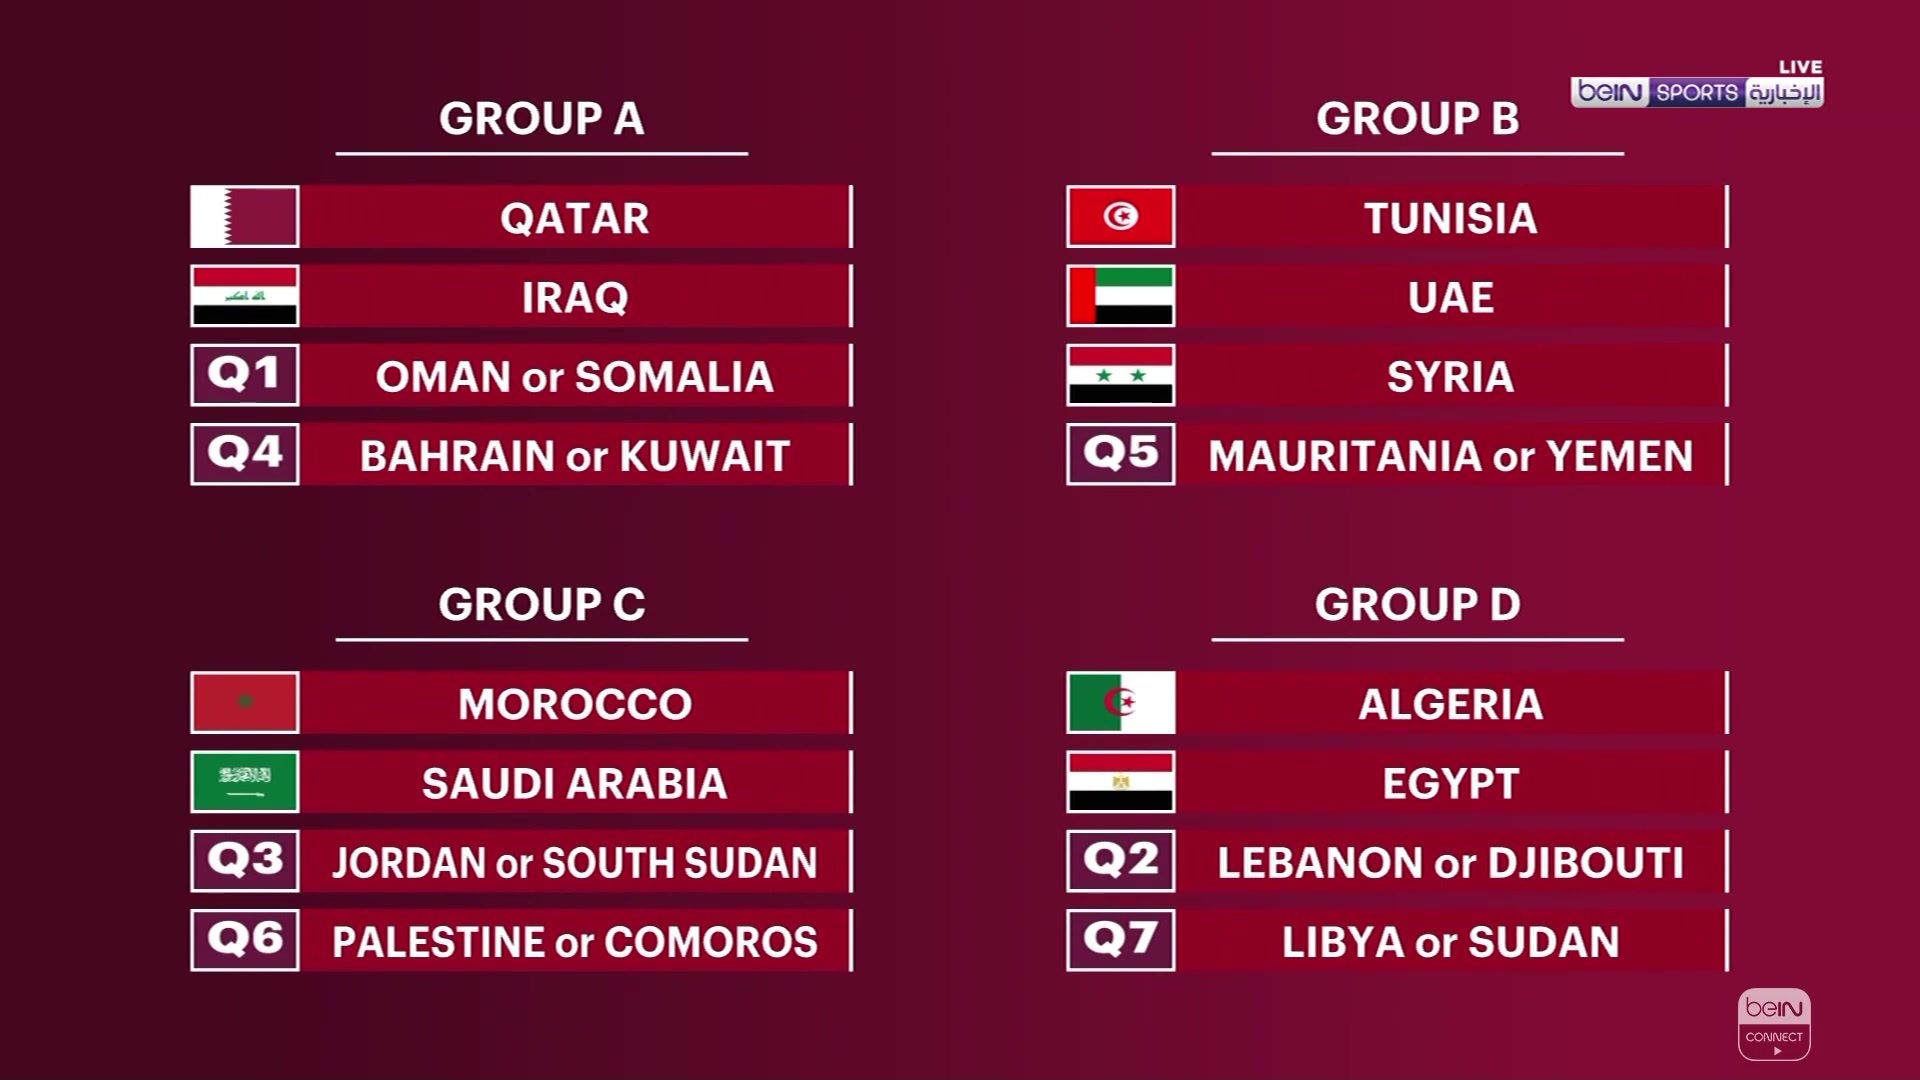 العرب كأس جدول بطولة جدول مباريات